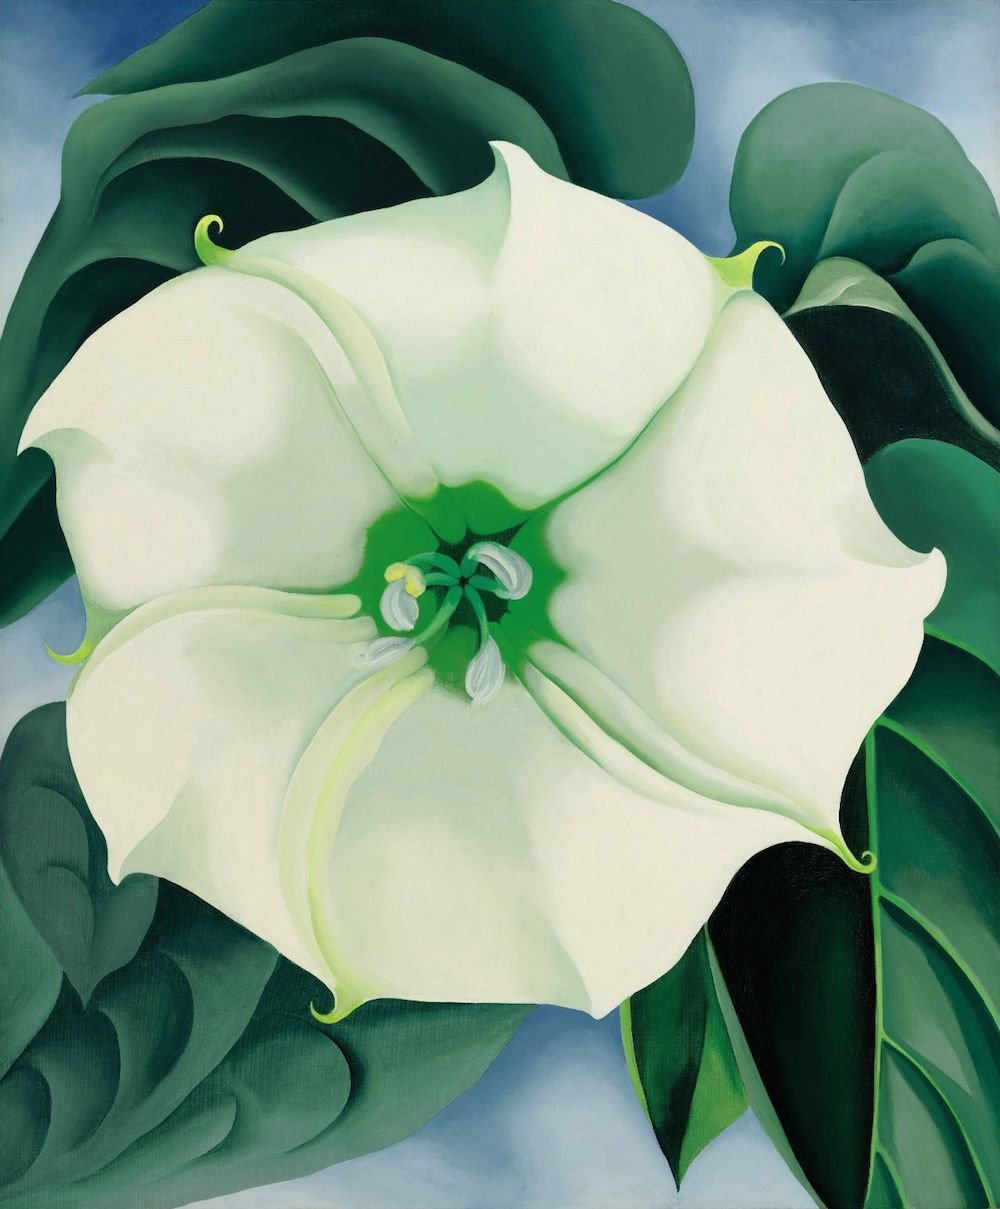 Джорджия О’Кифф. «Дурман» («Белый цветок № 1»). 1936. Продано на Sotheby's за $44,4 млн в 2014 г. Самая дорогая работа художника-женщины на аукционах. Фото: Sotheby'